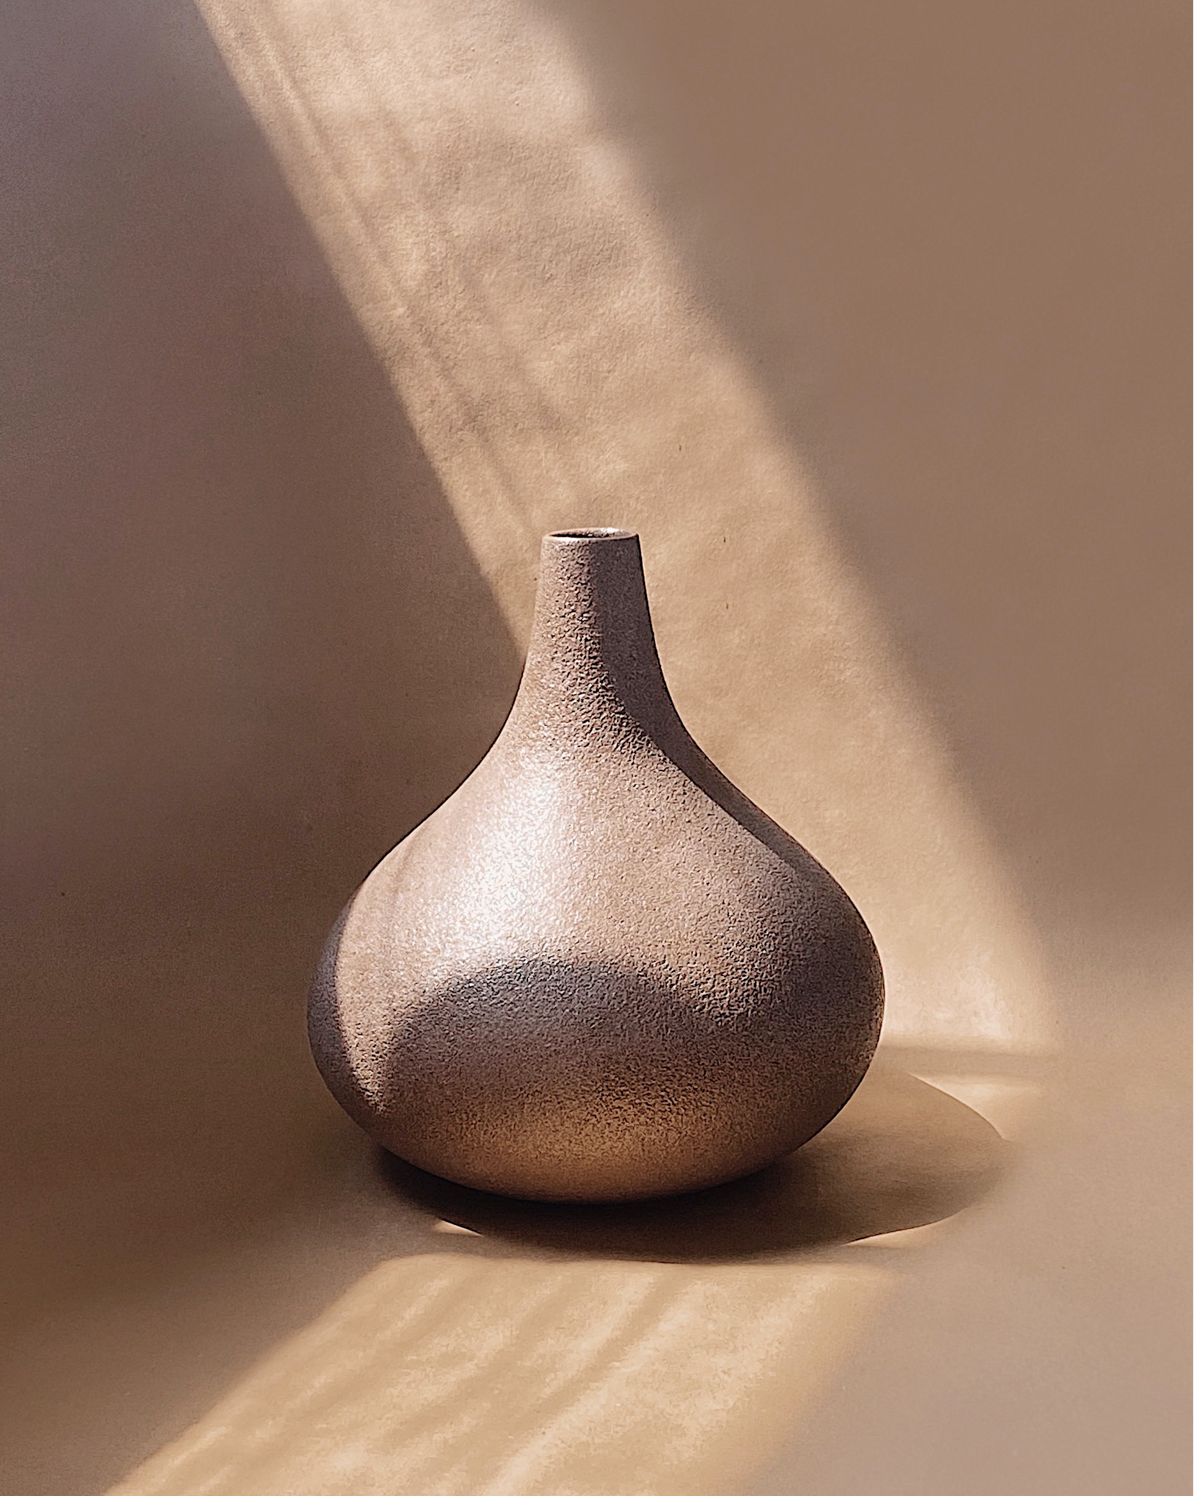 Spiritual vase with grainy texture